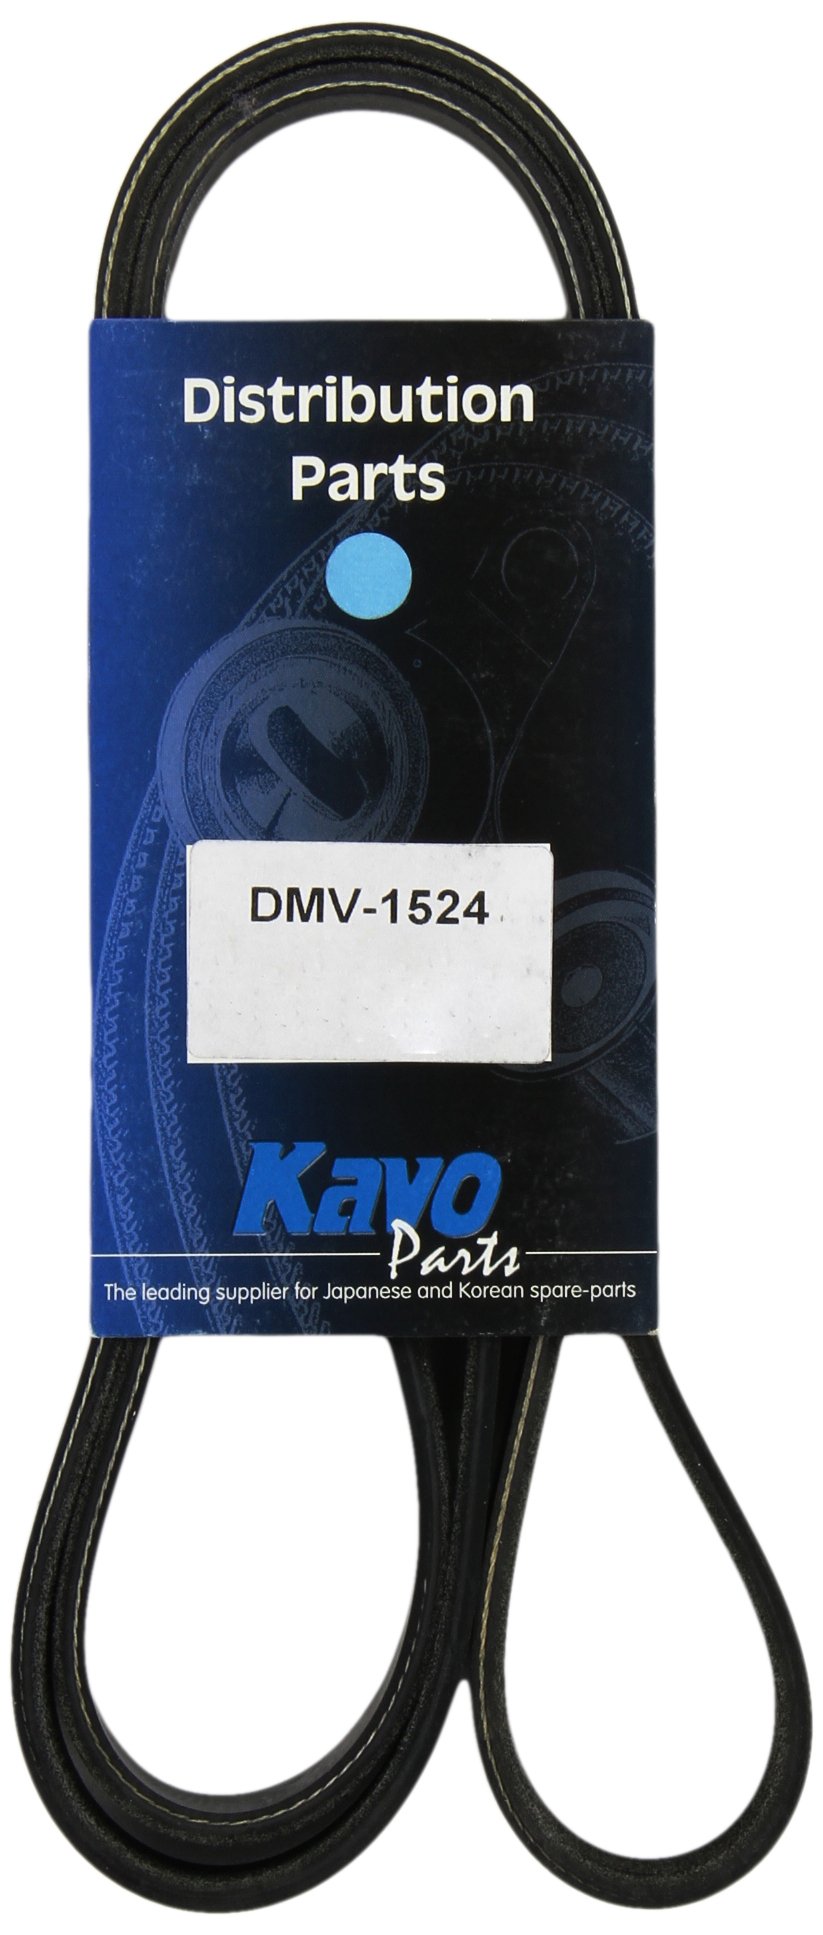 Kavo Parts DMV-1524 Keilrippenriem für Daihatsu Materia/Daihatsu Terios/Kia Carnival/Daihatsu Sirion/Kia Carnival von Kavo Parts